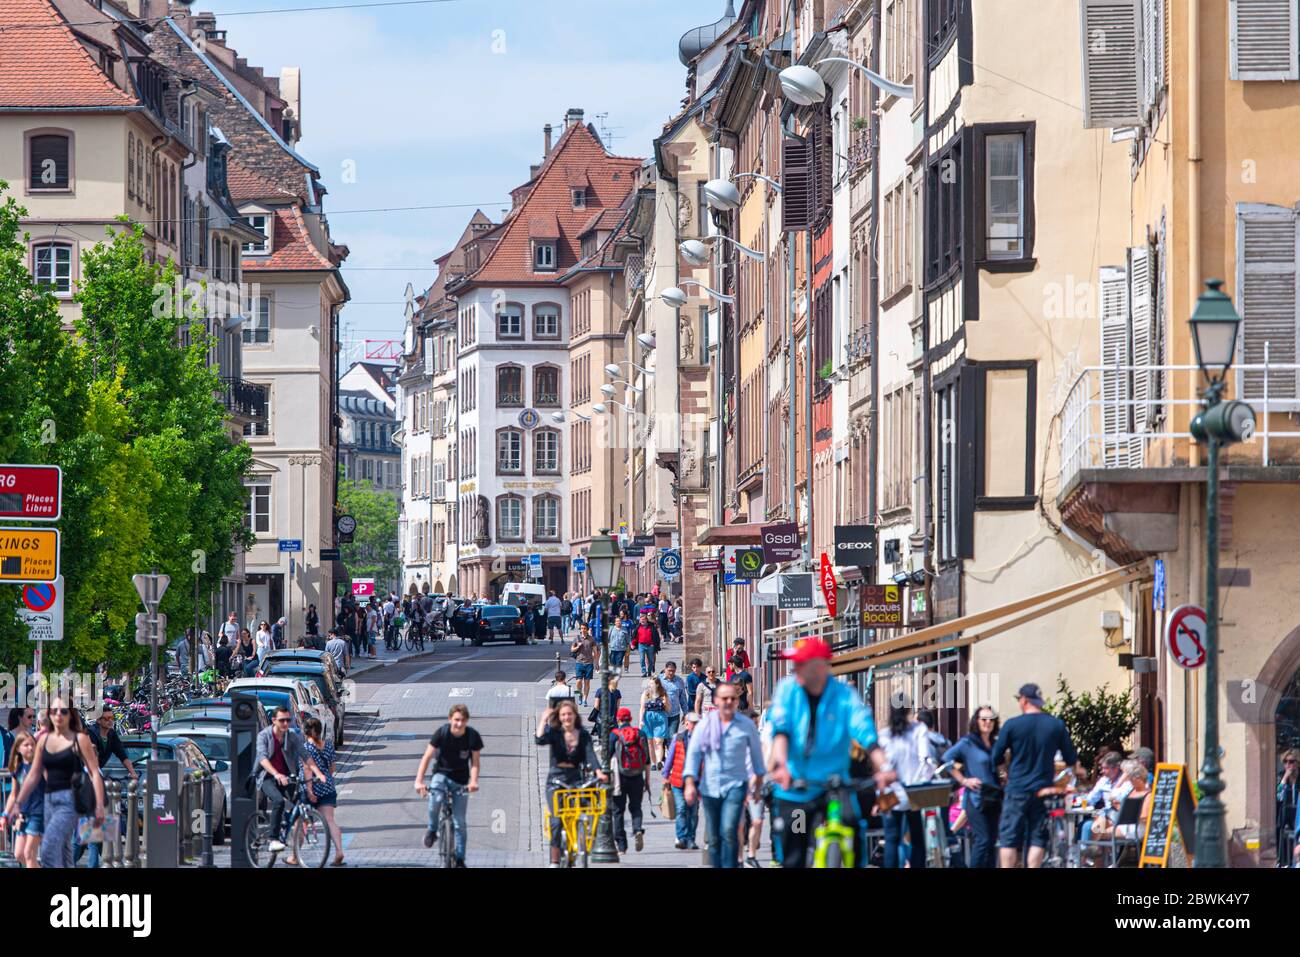 STRASBOURG - APR 28 : vieille ville, architecture traditionnelle, touristes, foule de personnes à Strasbourg le 28 avril. 2018 en France Banque D'Images